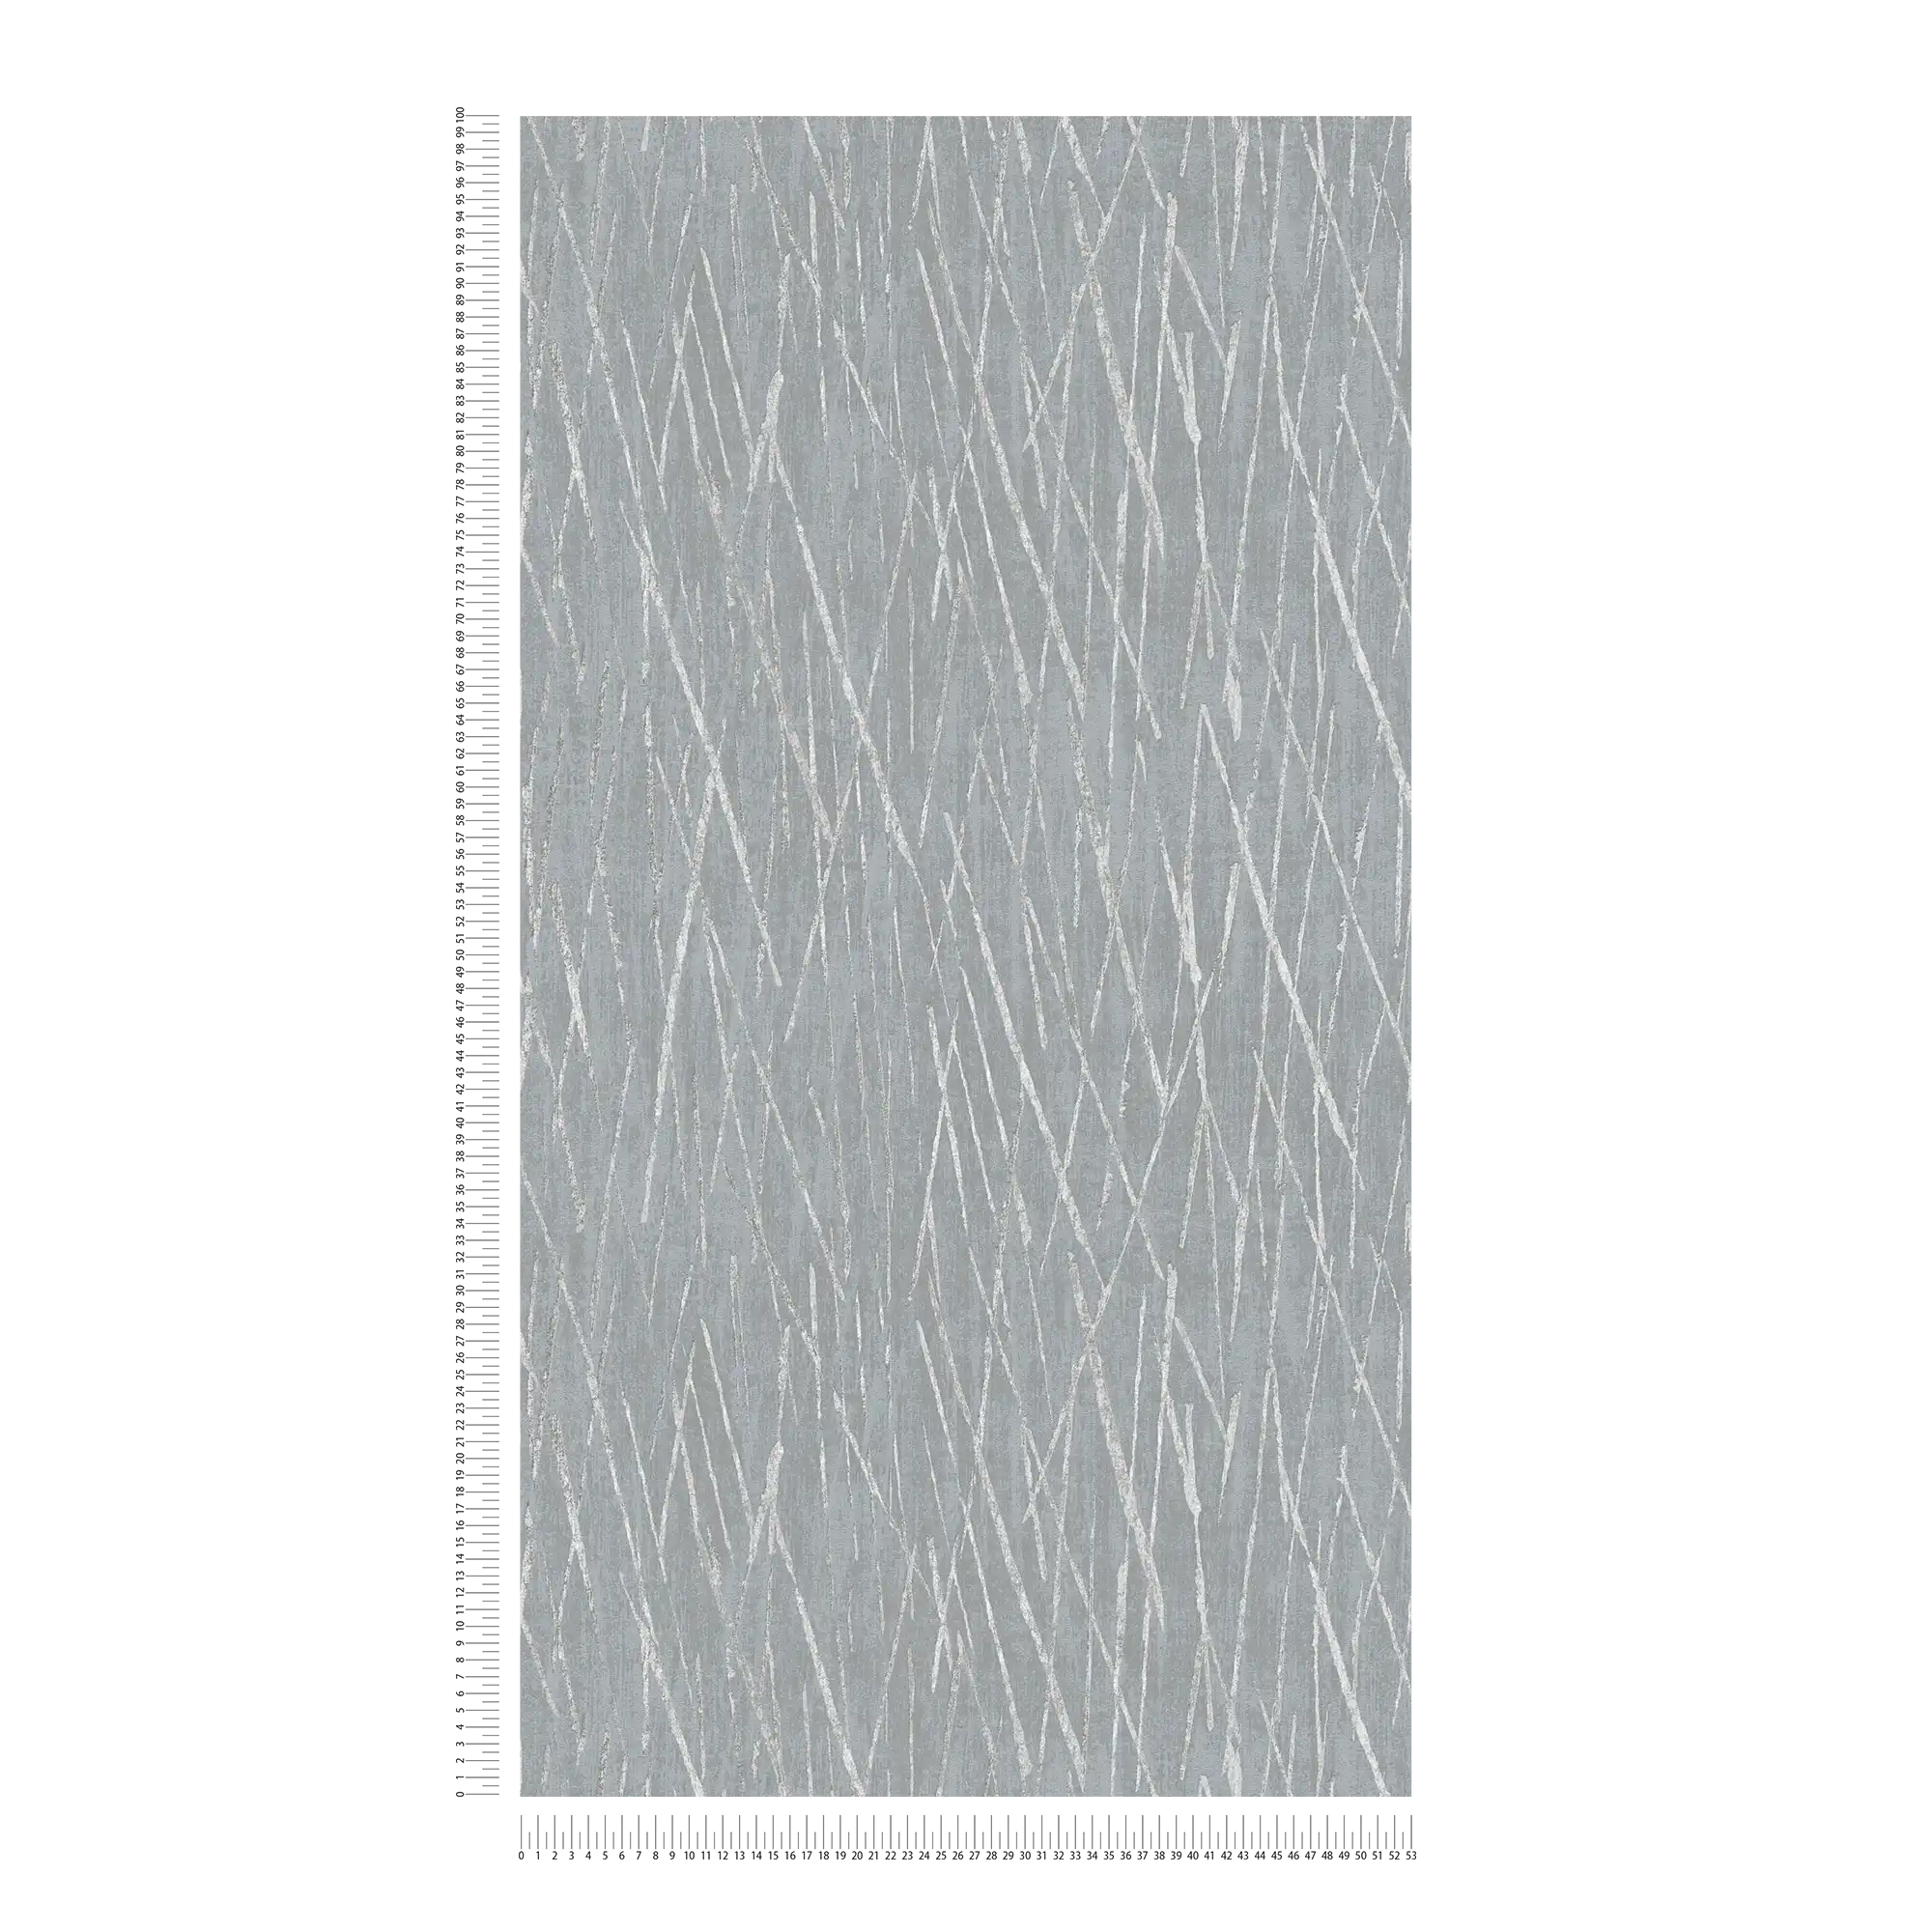             Papel pintado no tejido con diseño de naturaleza y efecto metálico - gris, metálico
        